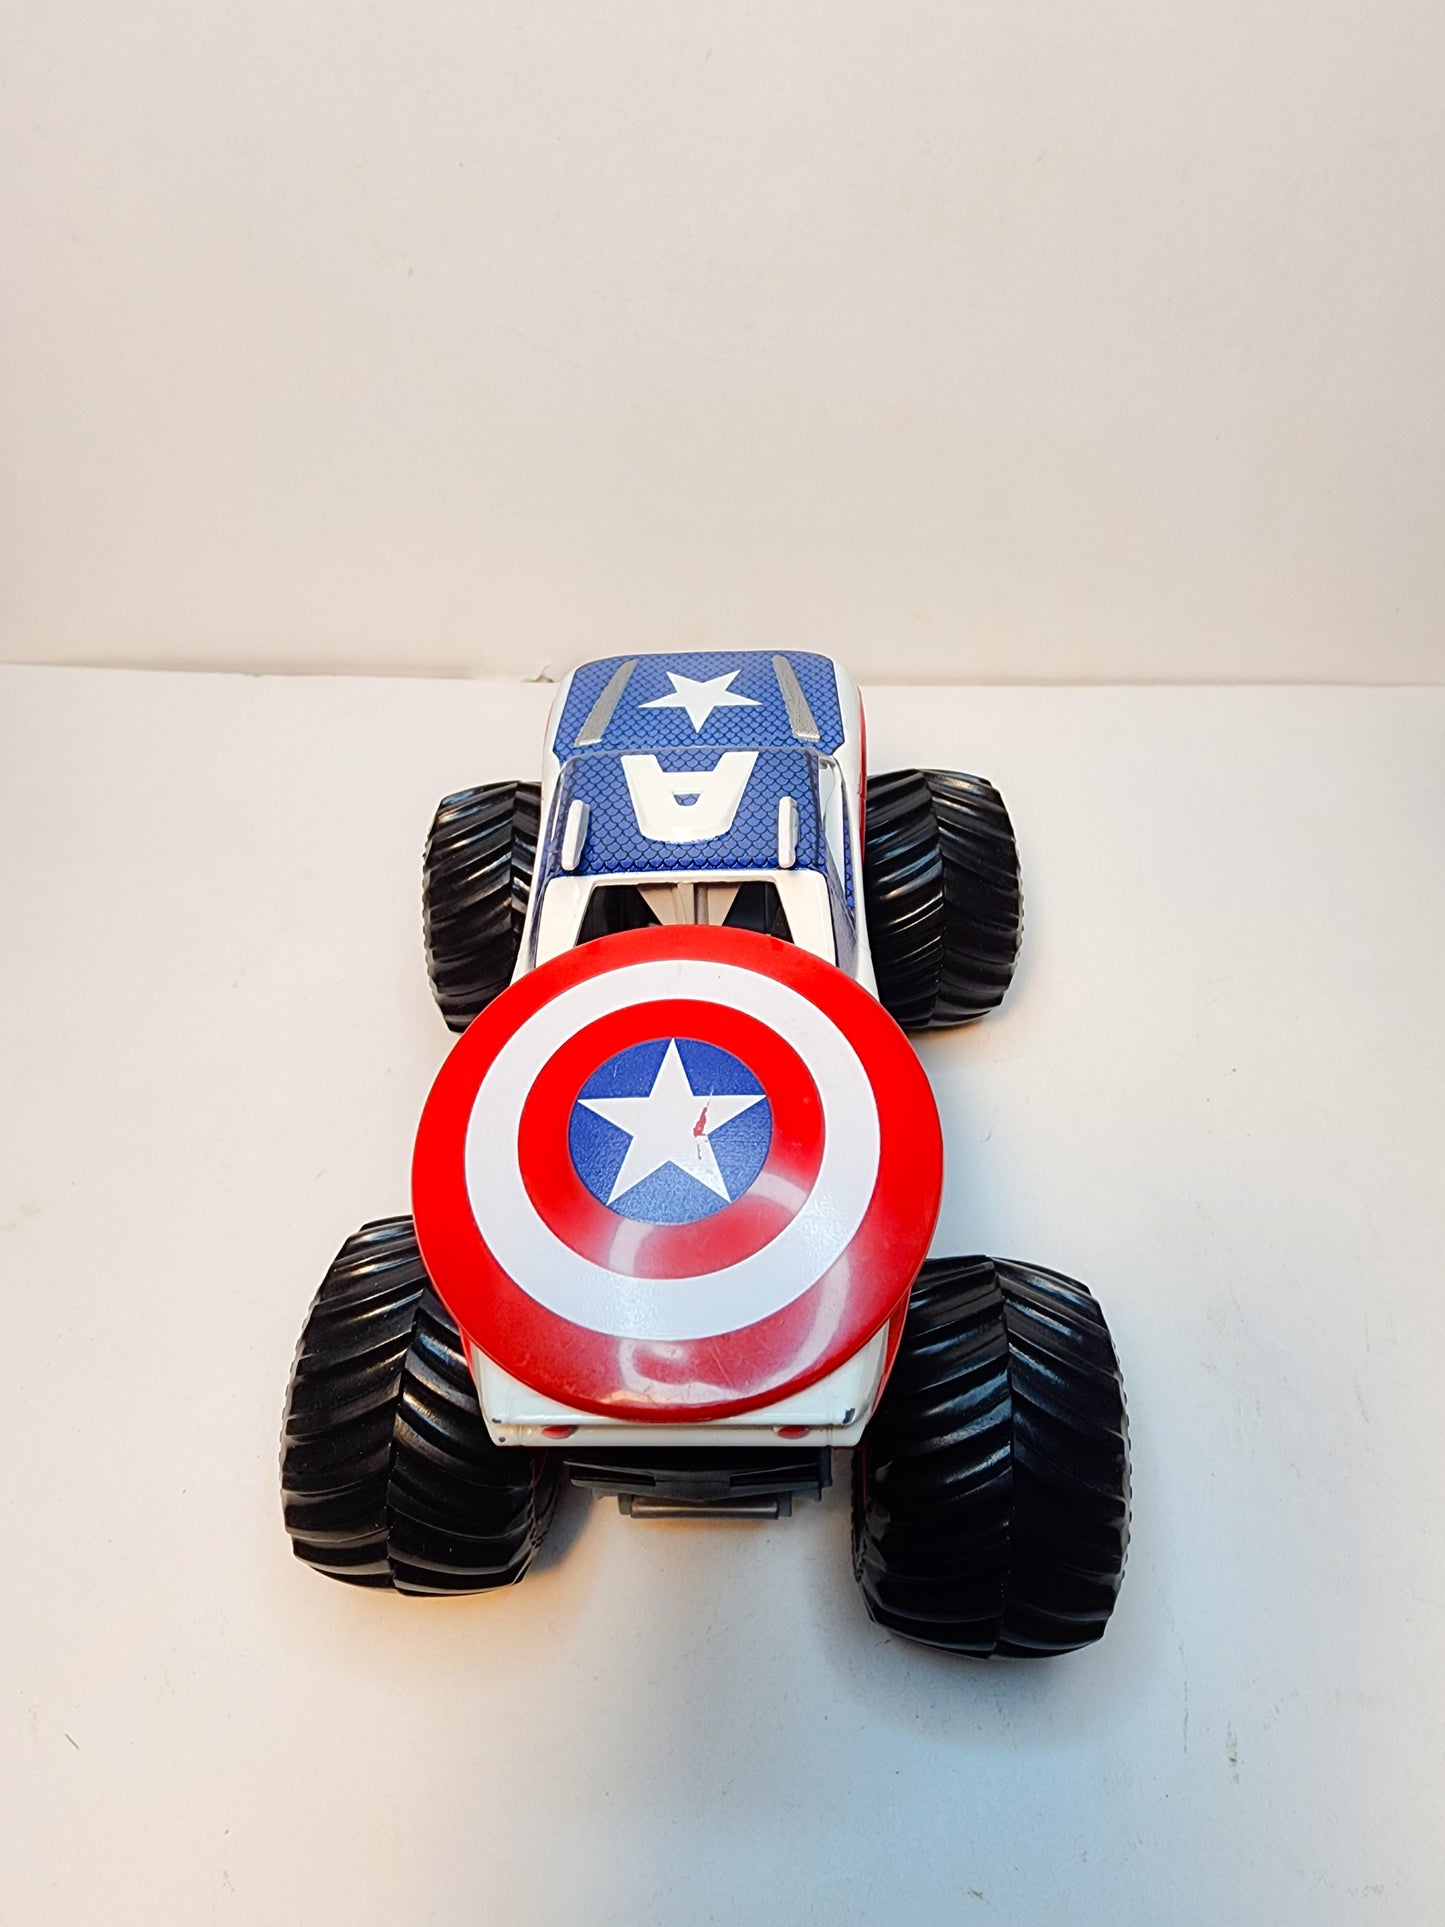 Hot Wheels MONSTER JAM 1/64 Marvel Captain America Diecast 4X4 Monster Truck VGC